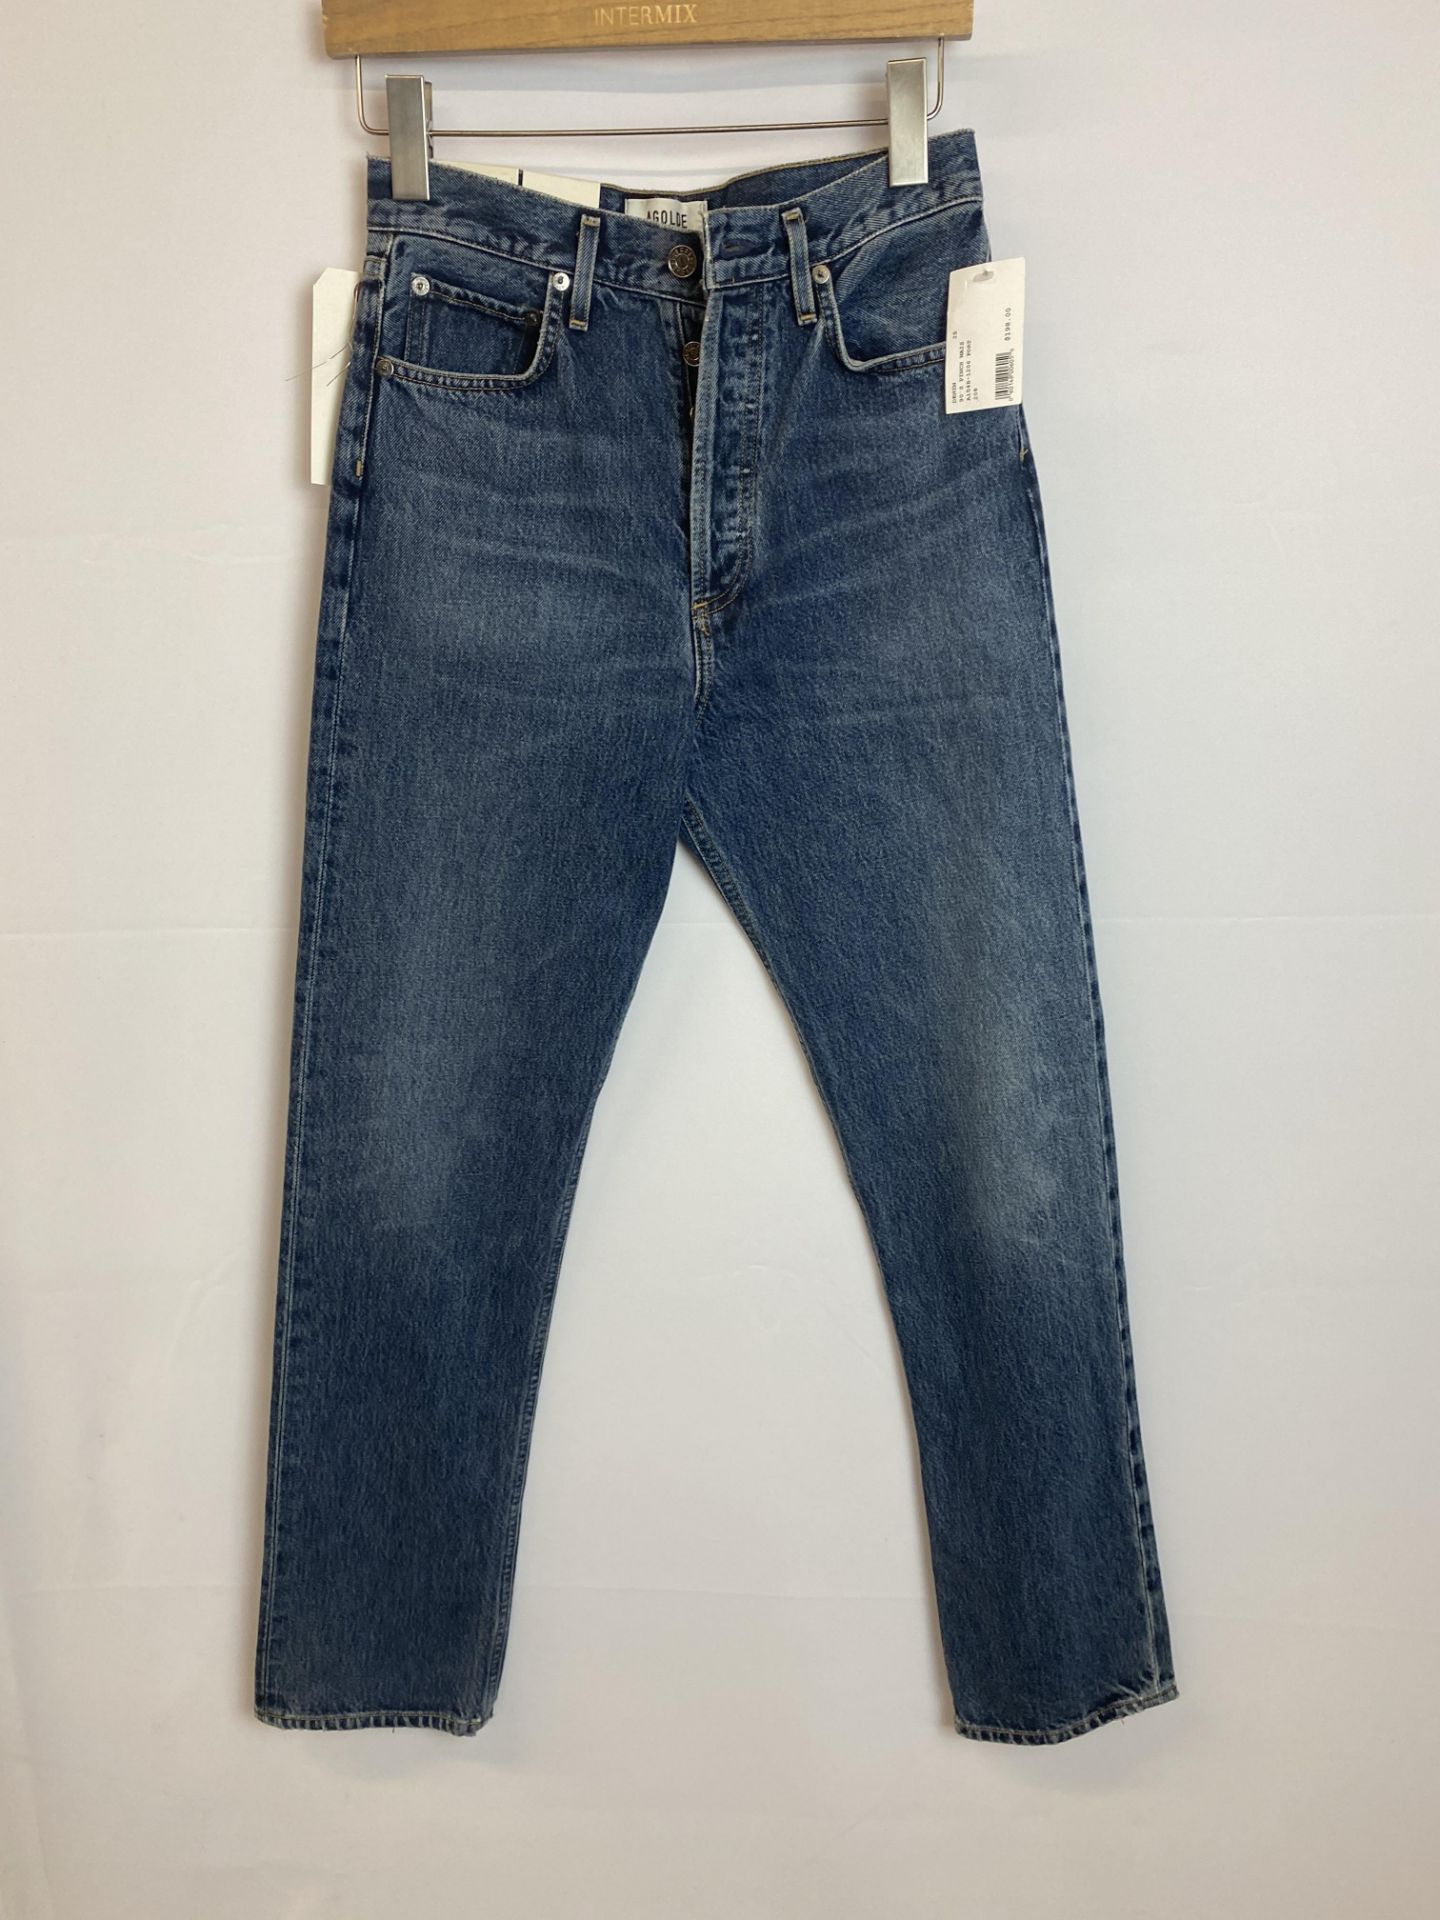 Agolde 90's Pinch Waist Denim Jean, Button Front, Size: 25, Original Retail Price: $198